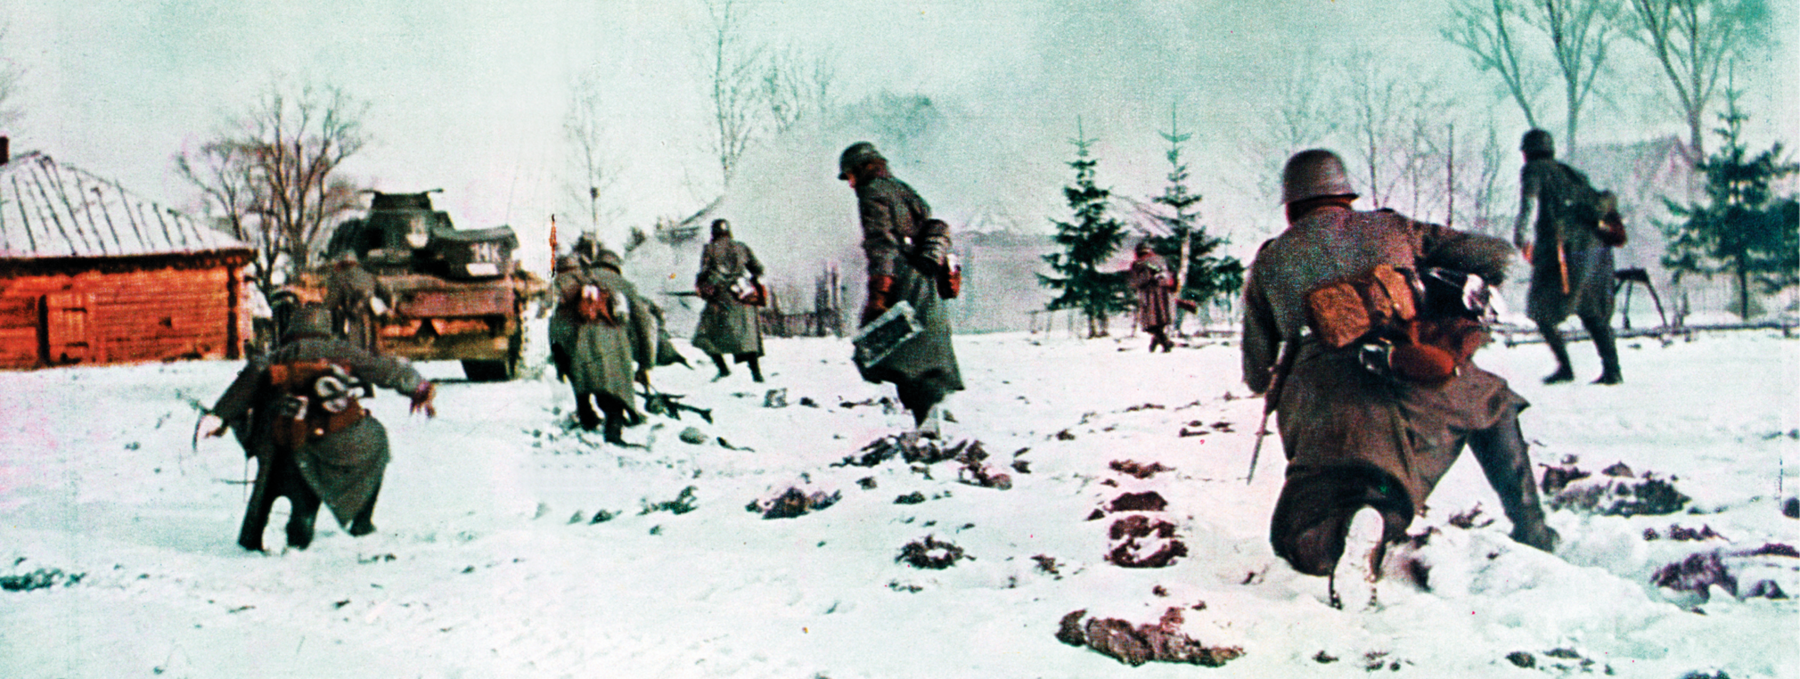 Fotografia colorizada. Soldados andando sobre uma camada densa de neve. Vestem sobretudo, capacete e carregam pequenas bolsas no cinto. Ao fundo, um tanque de guerra ao lado de uma casa.